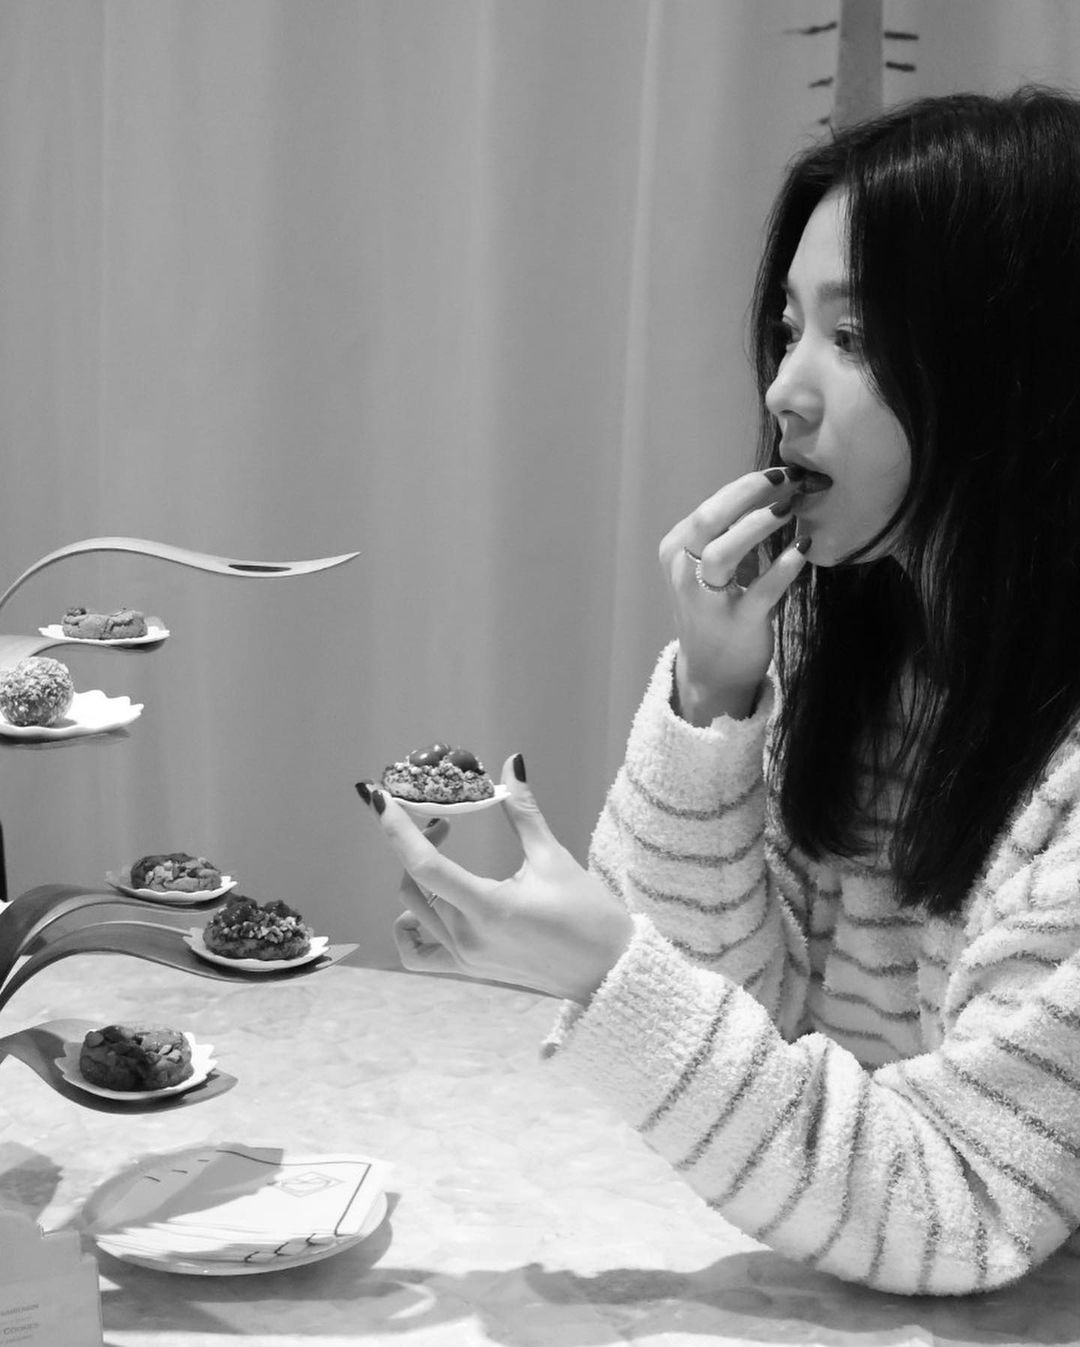 "Bà hoàng mặt mộc" Song Hye Kyo trở thành chủ đề hot khi thả nhẹ vài tấm ảnh xuề xoà ở trời Tây- Ảnh 1.